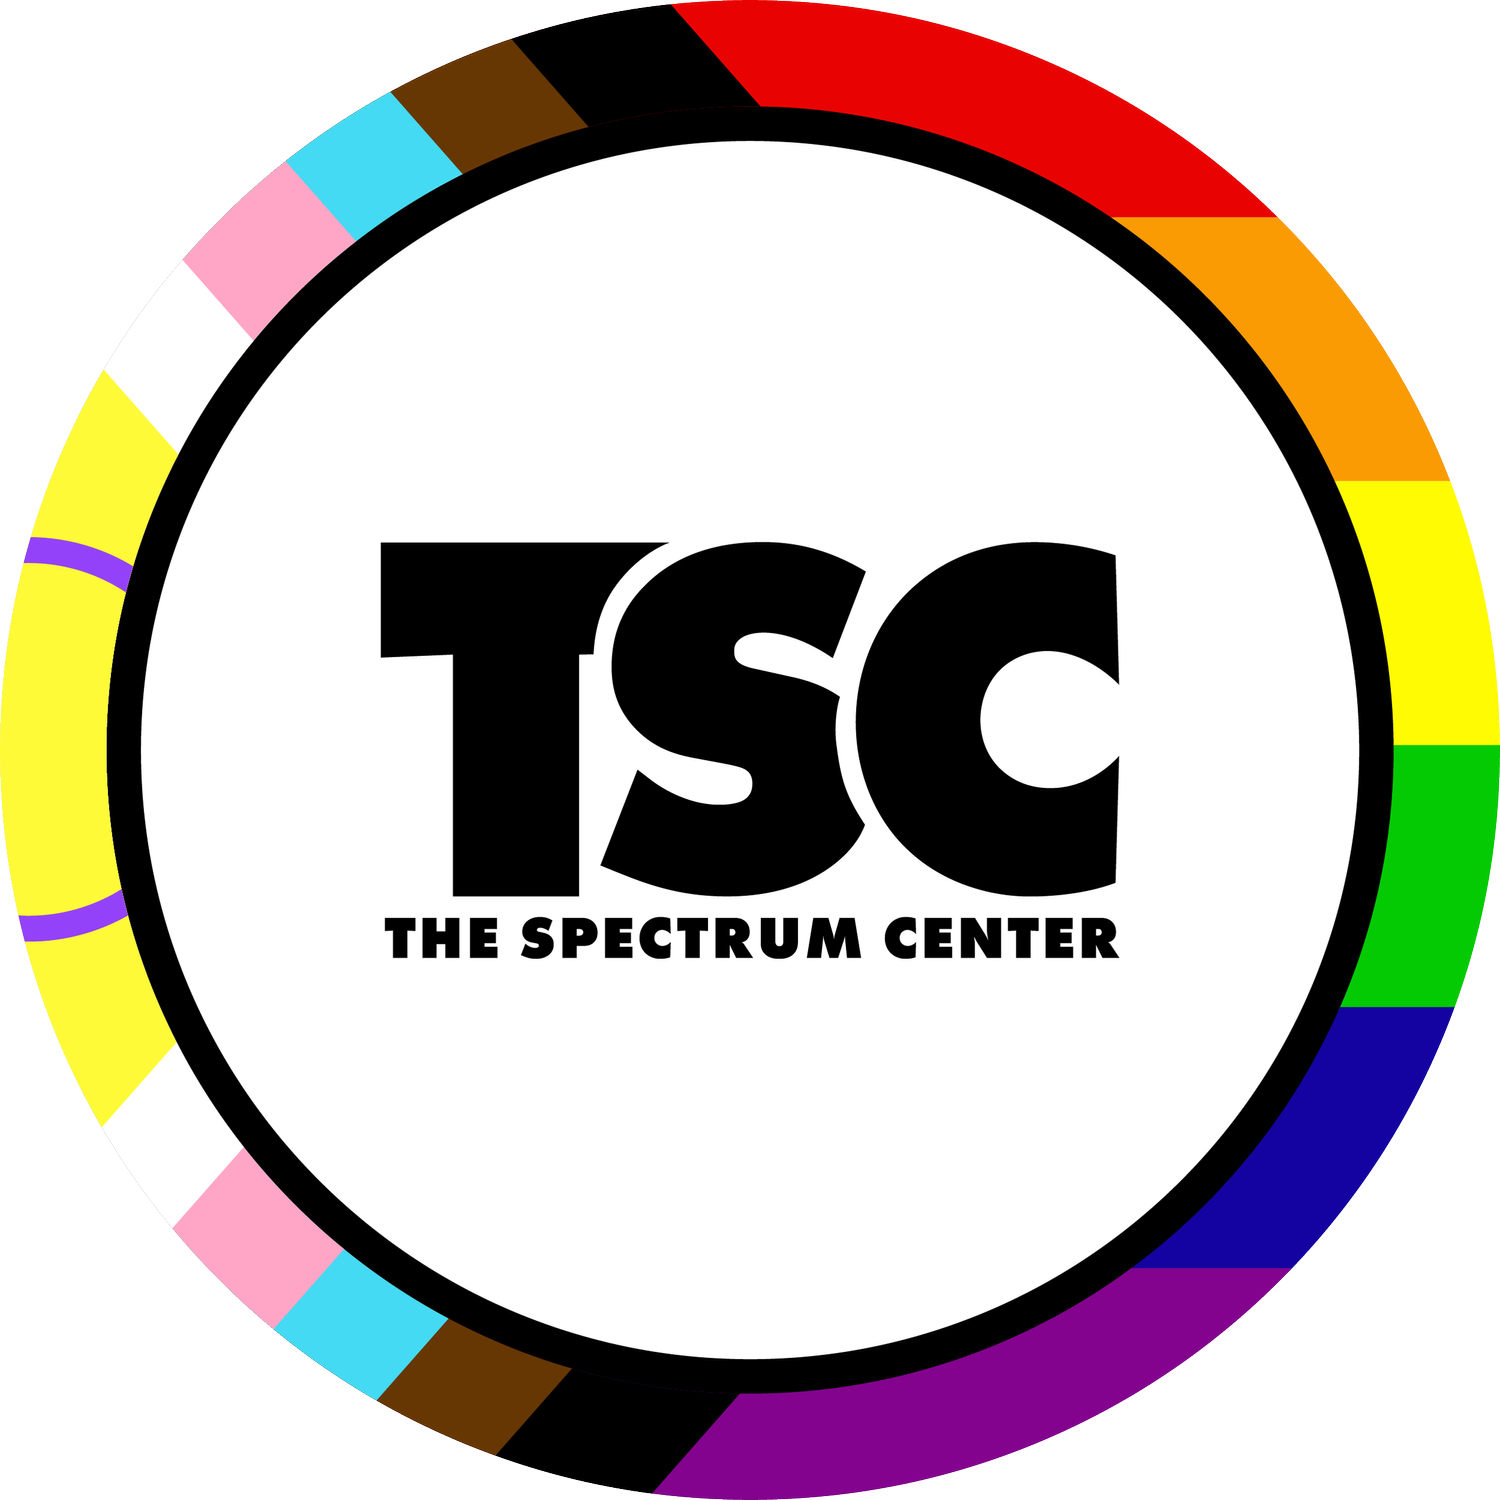 The Spectrum Center of Hattiesburg